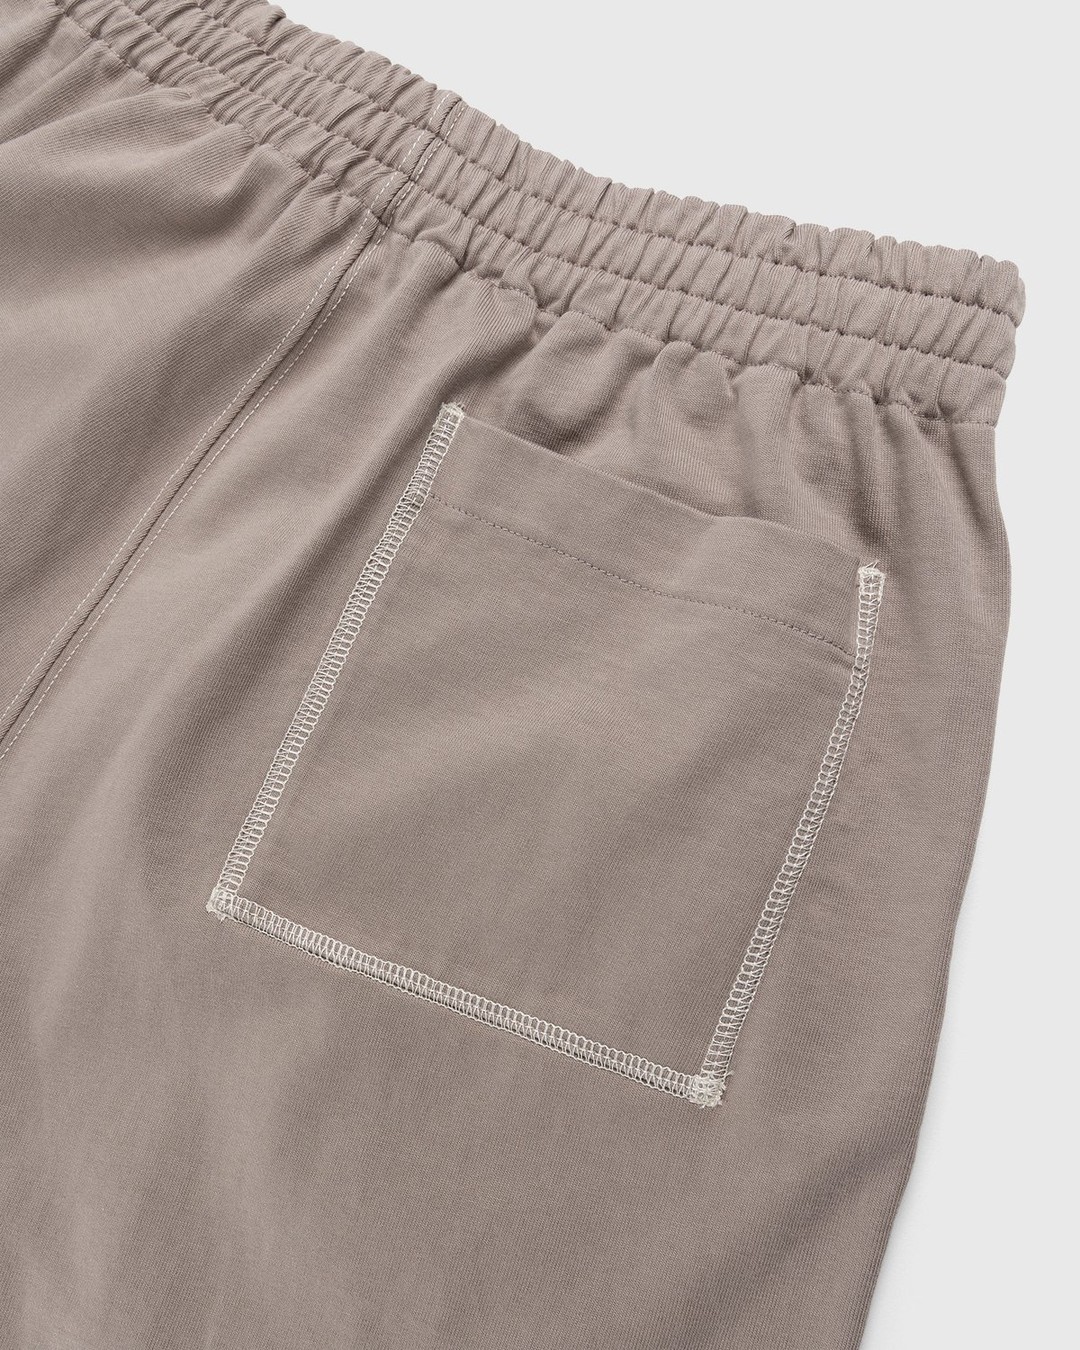 Auralee – High Density Cotton Jersey Shorts Grey Beige - Shorts - Beige - Image 5